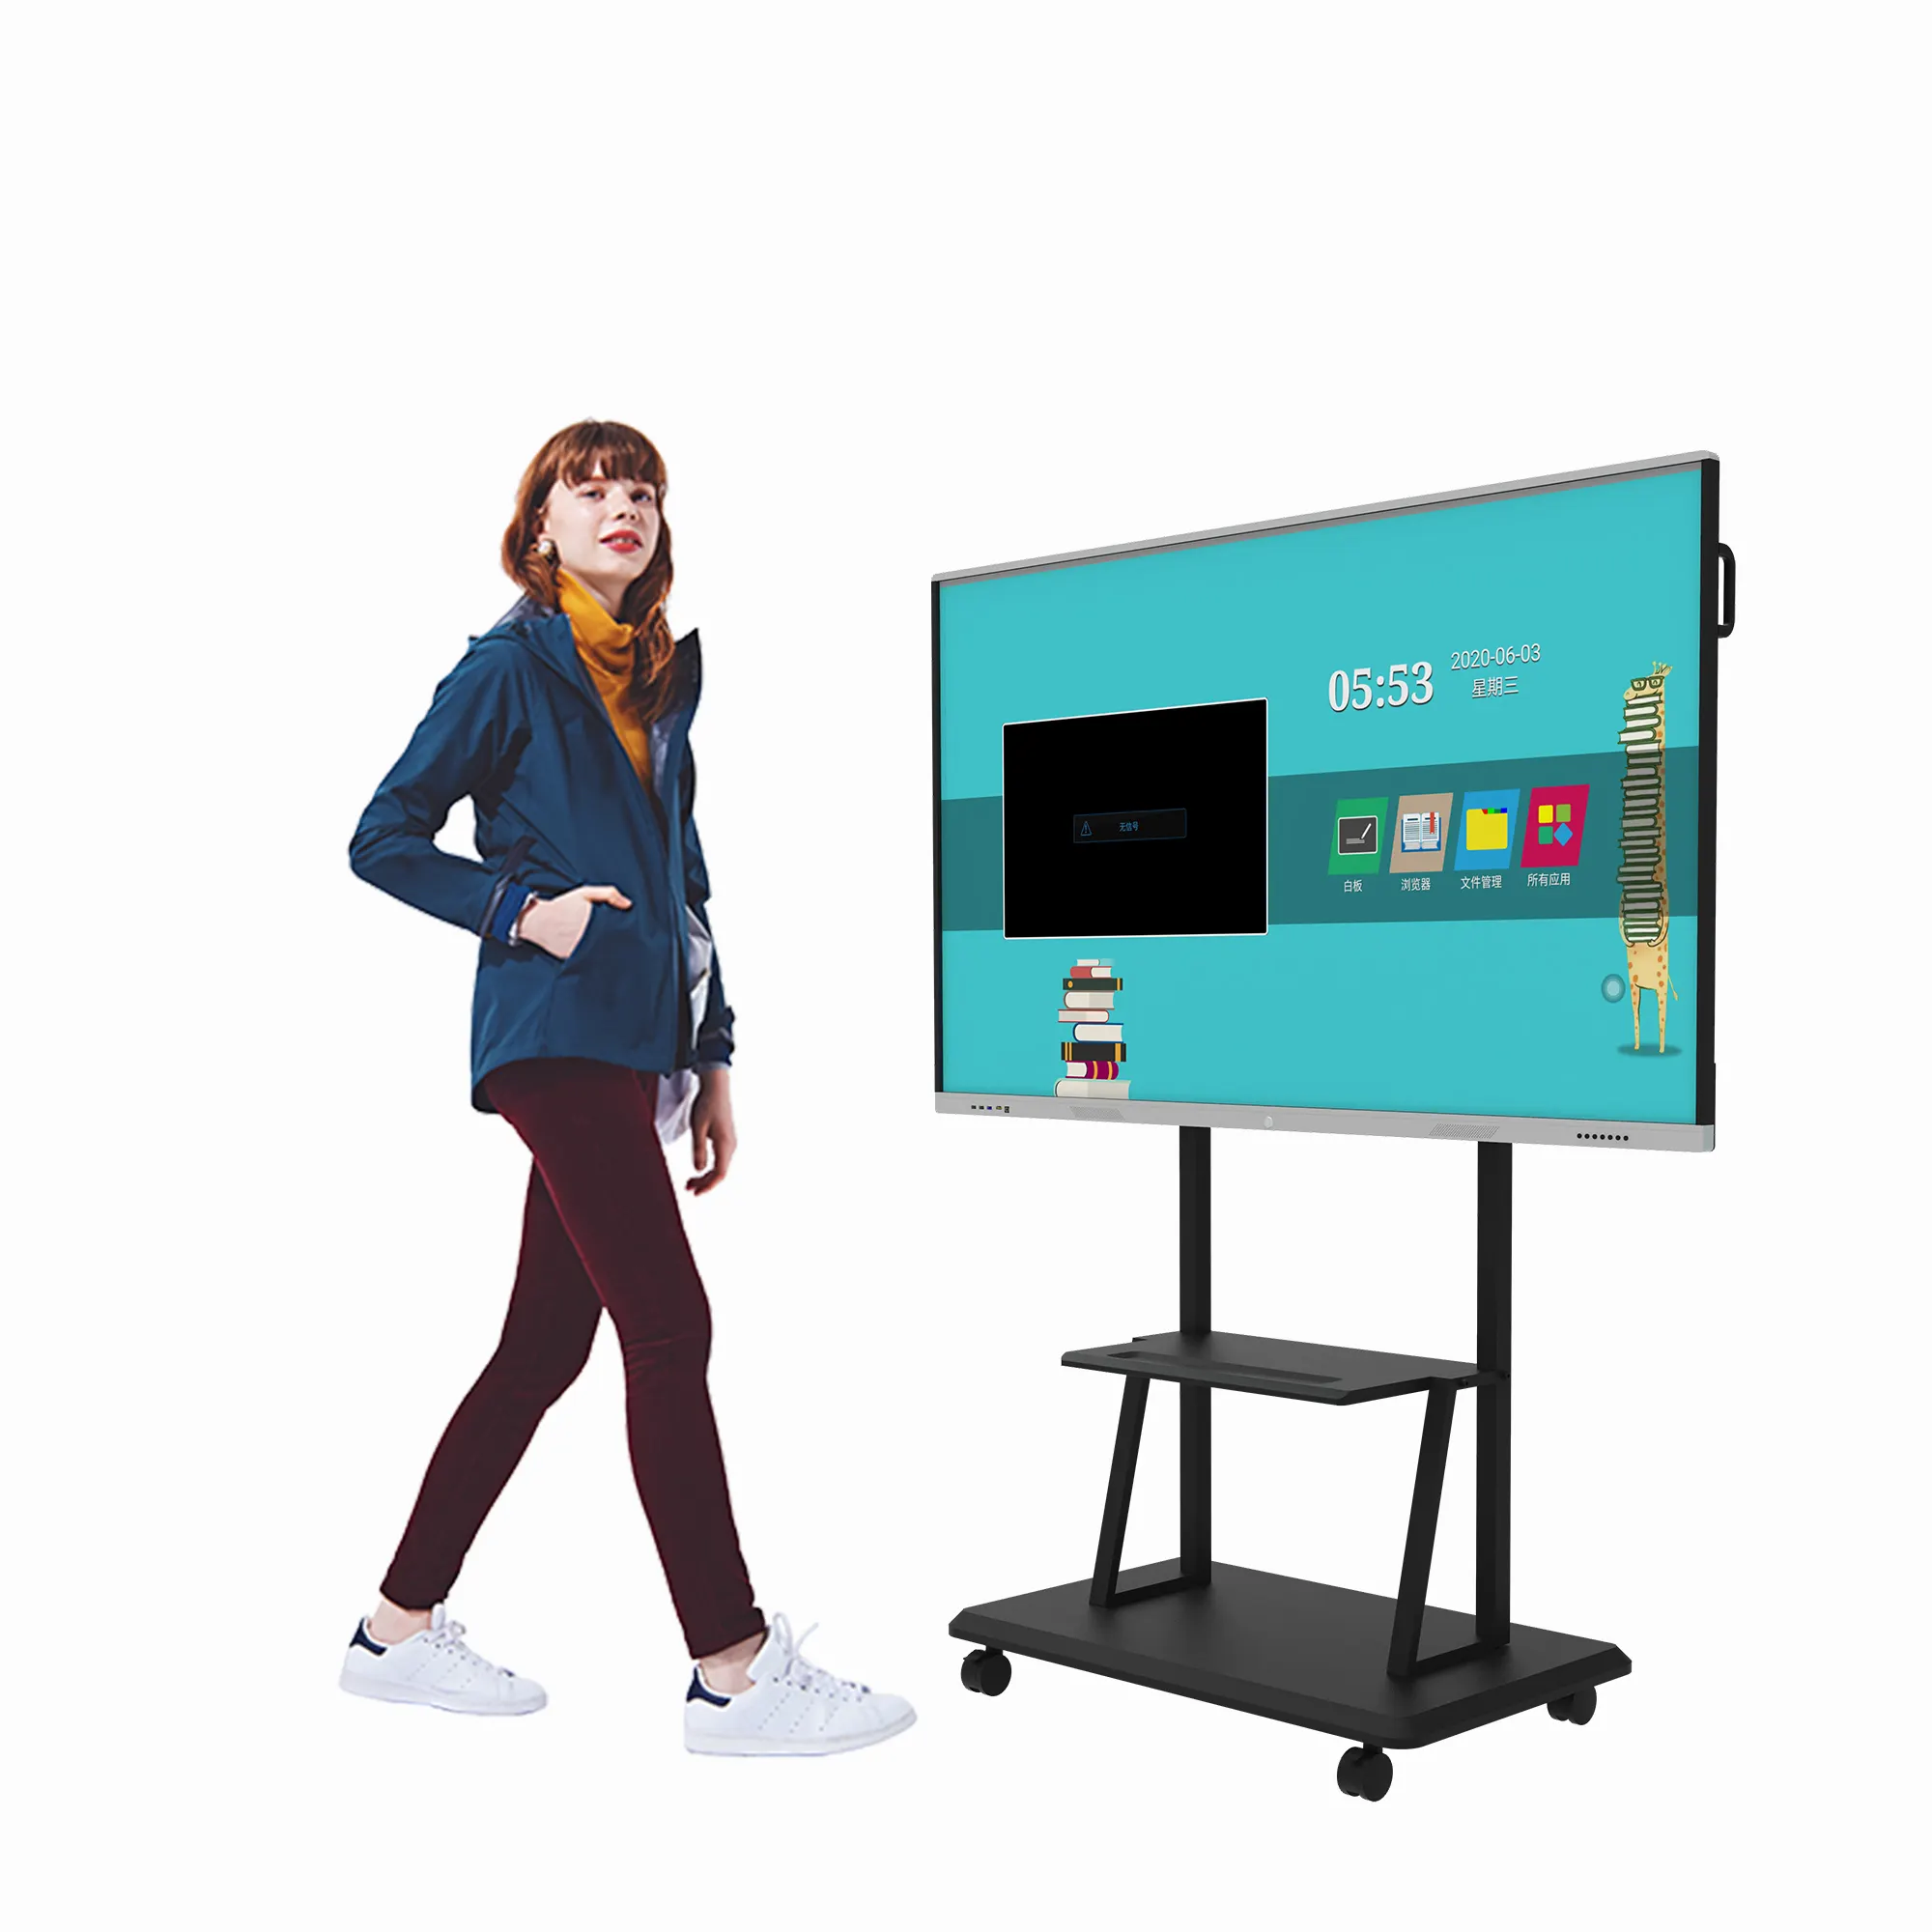 Tela multi-touch de 100 polegadas inteligente, tela lcd para sala de aula eletrônica digital interativa quadro branco